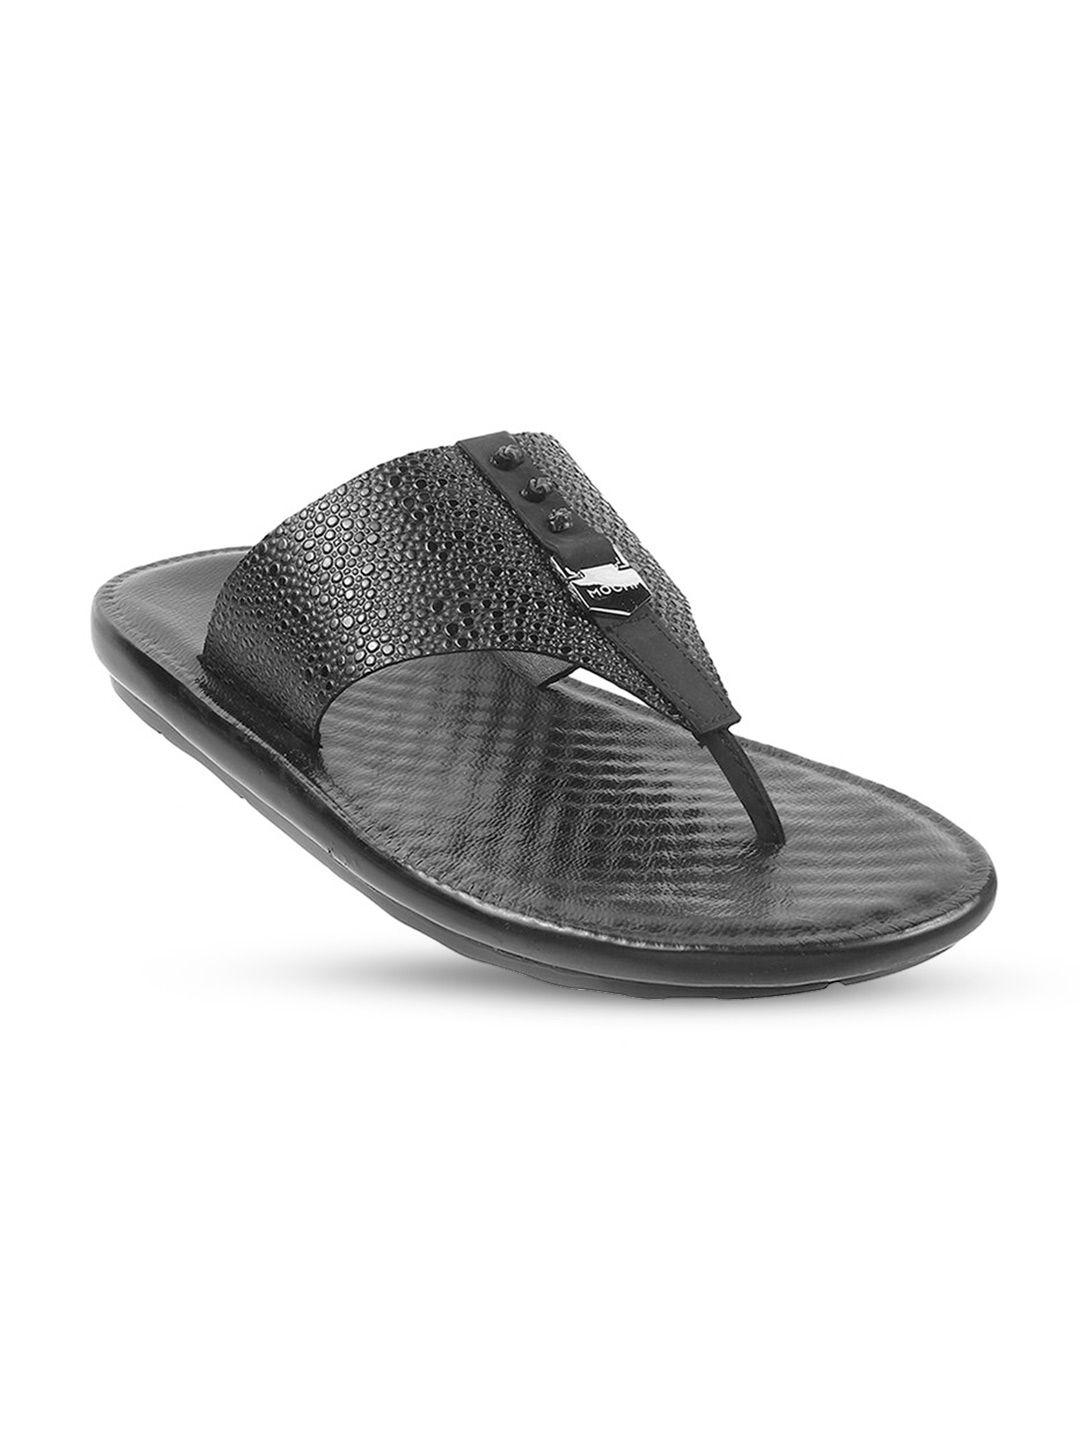 mochi men comfort sandals